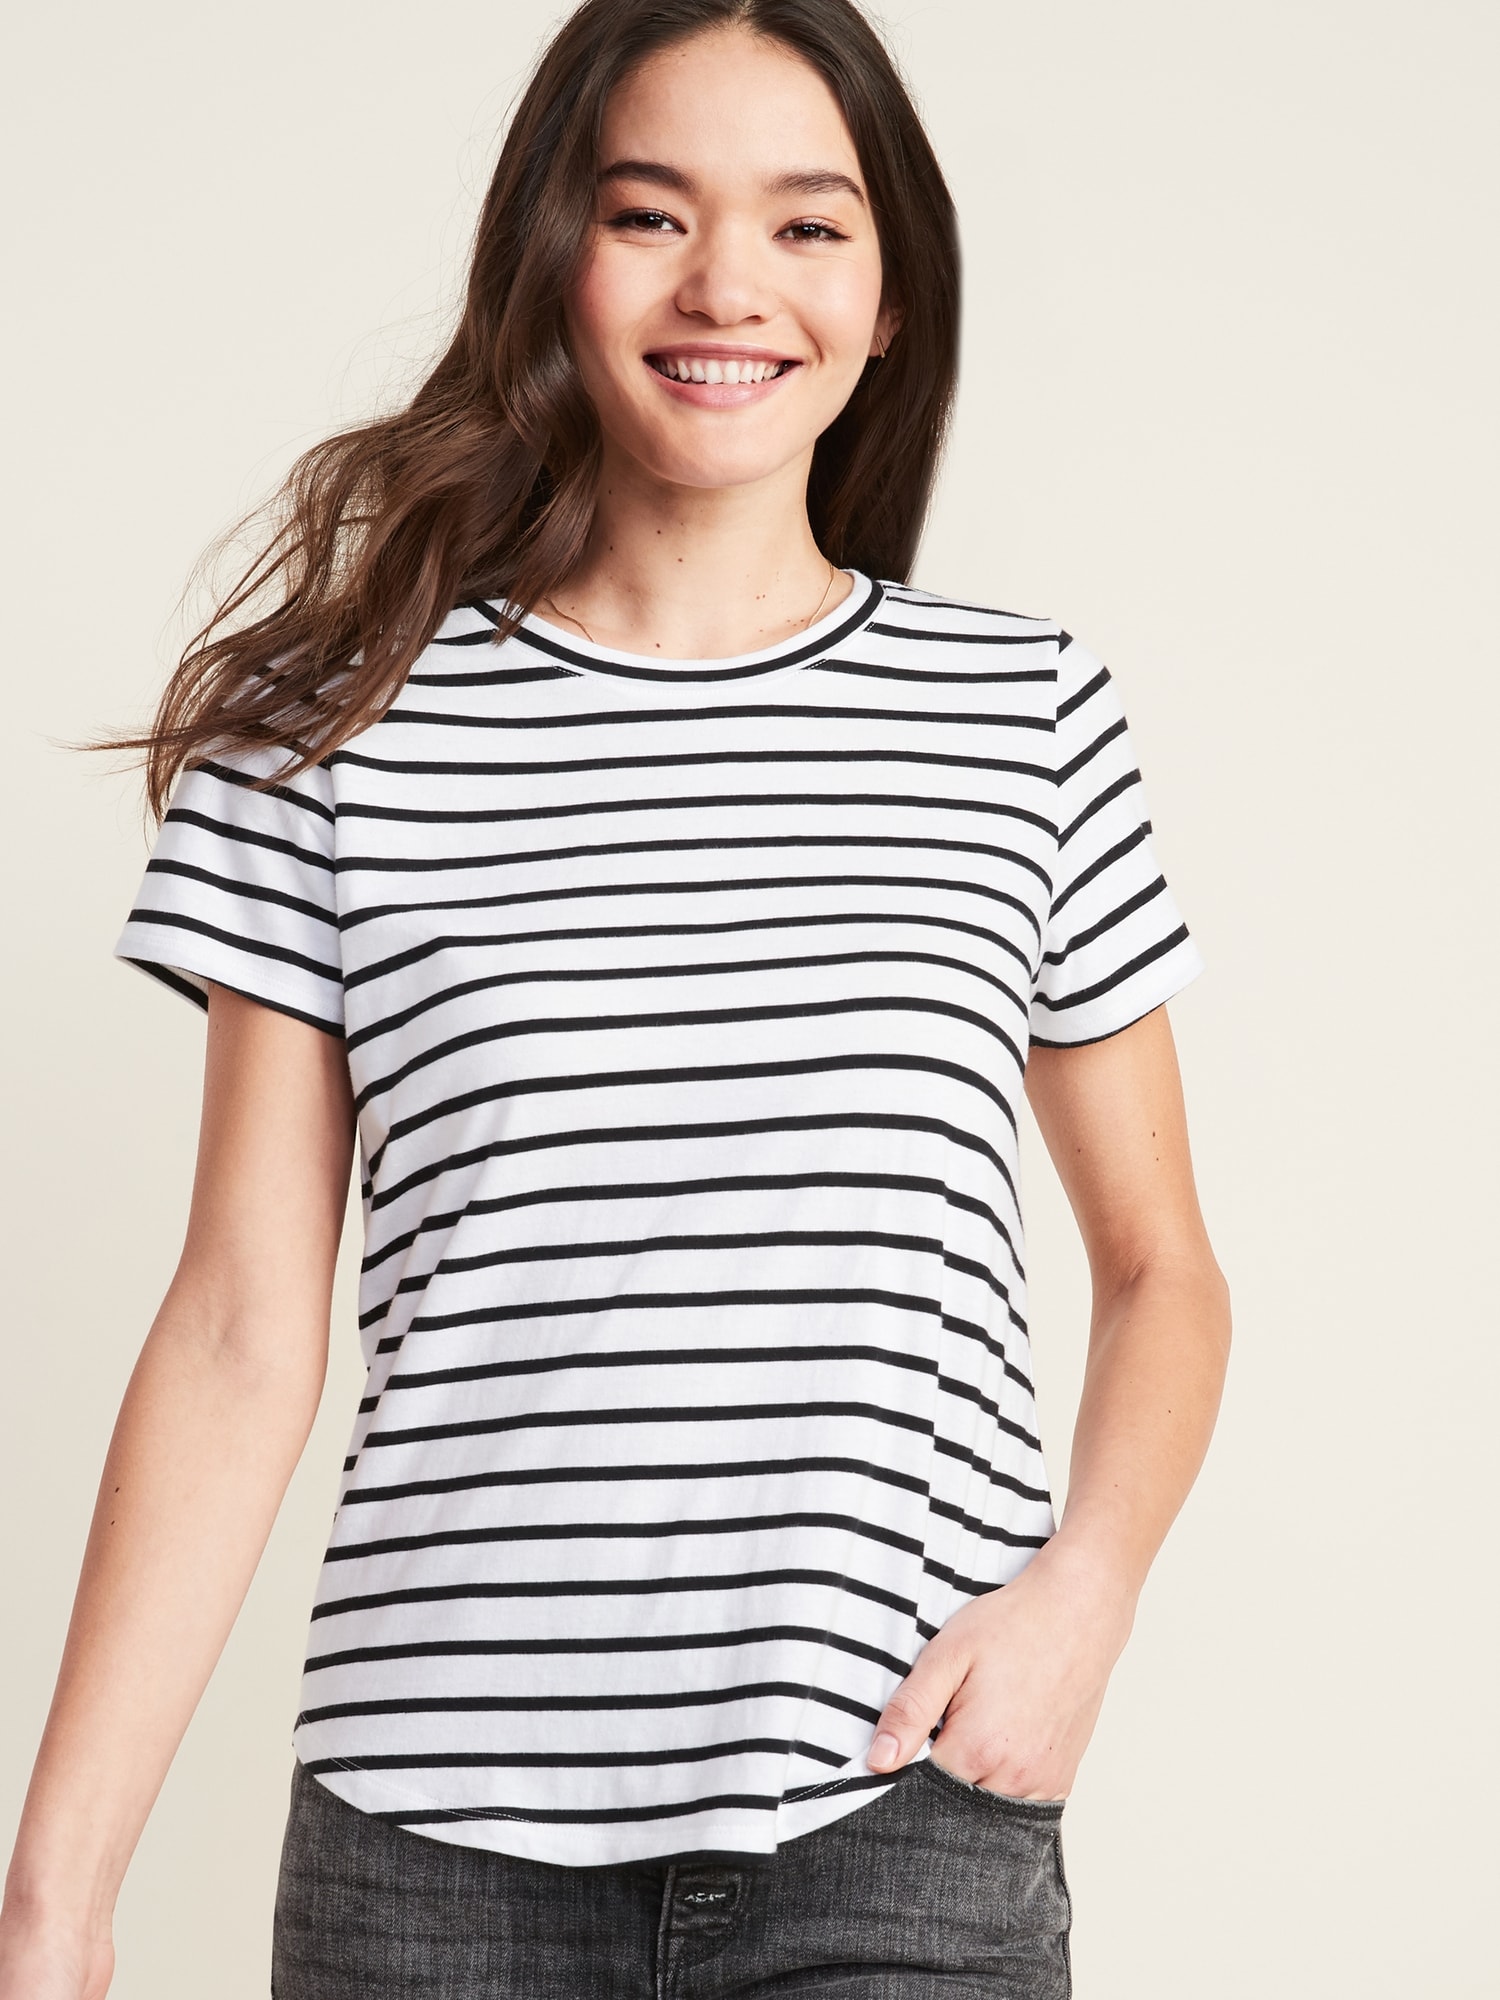 EveryWear Striped Short-Sleeve Tee for Women